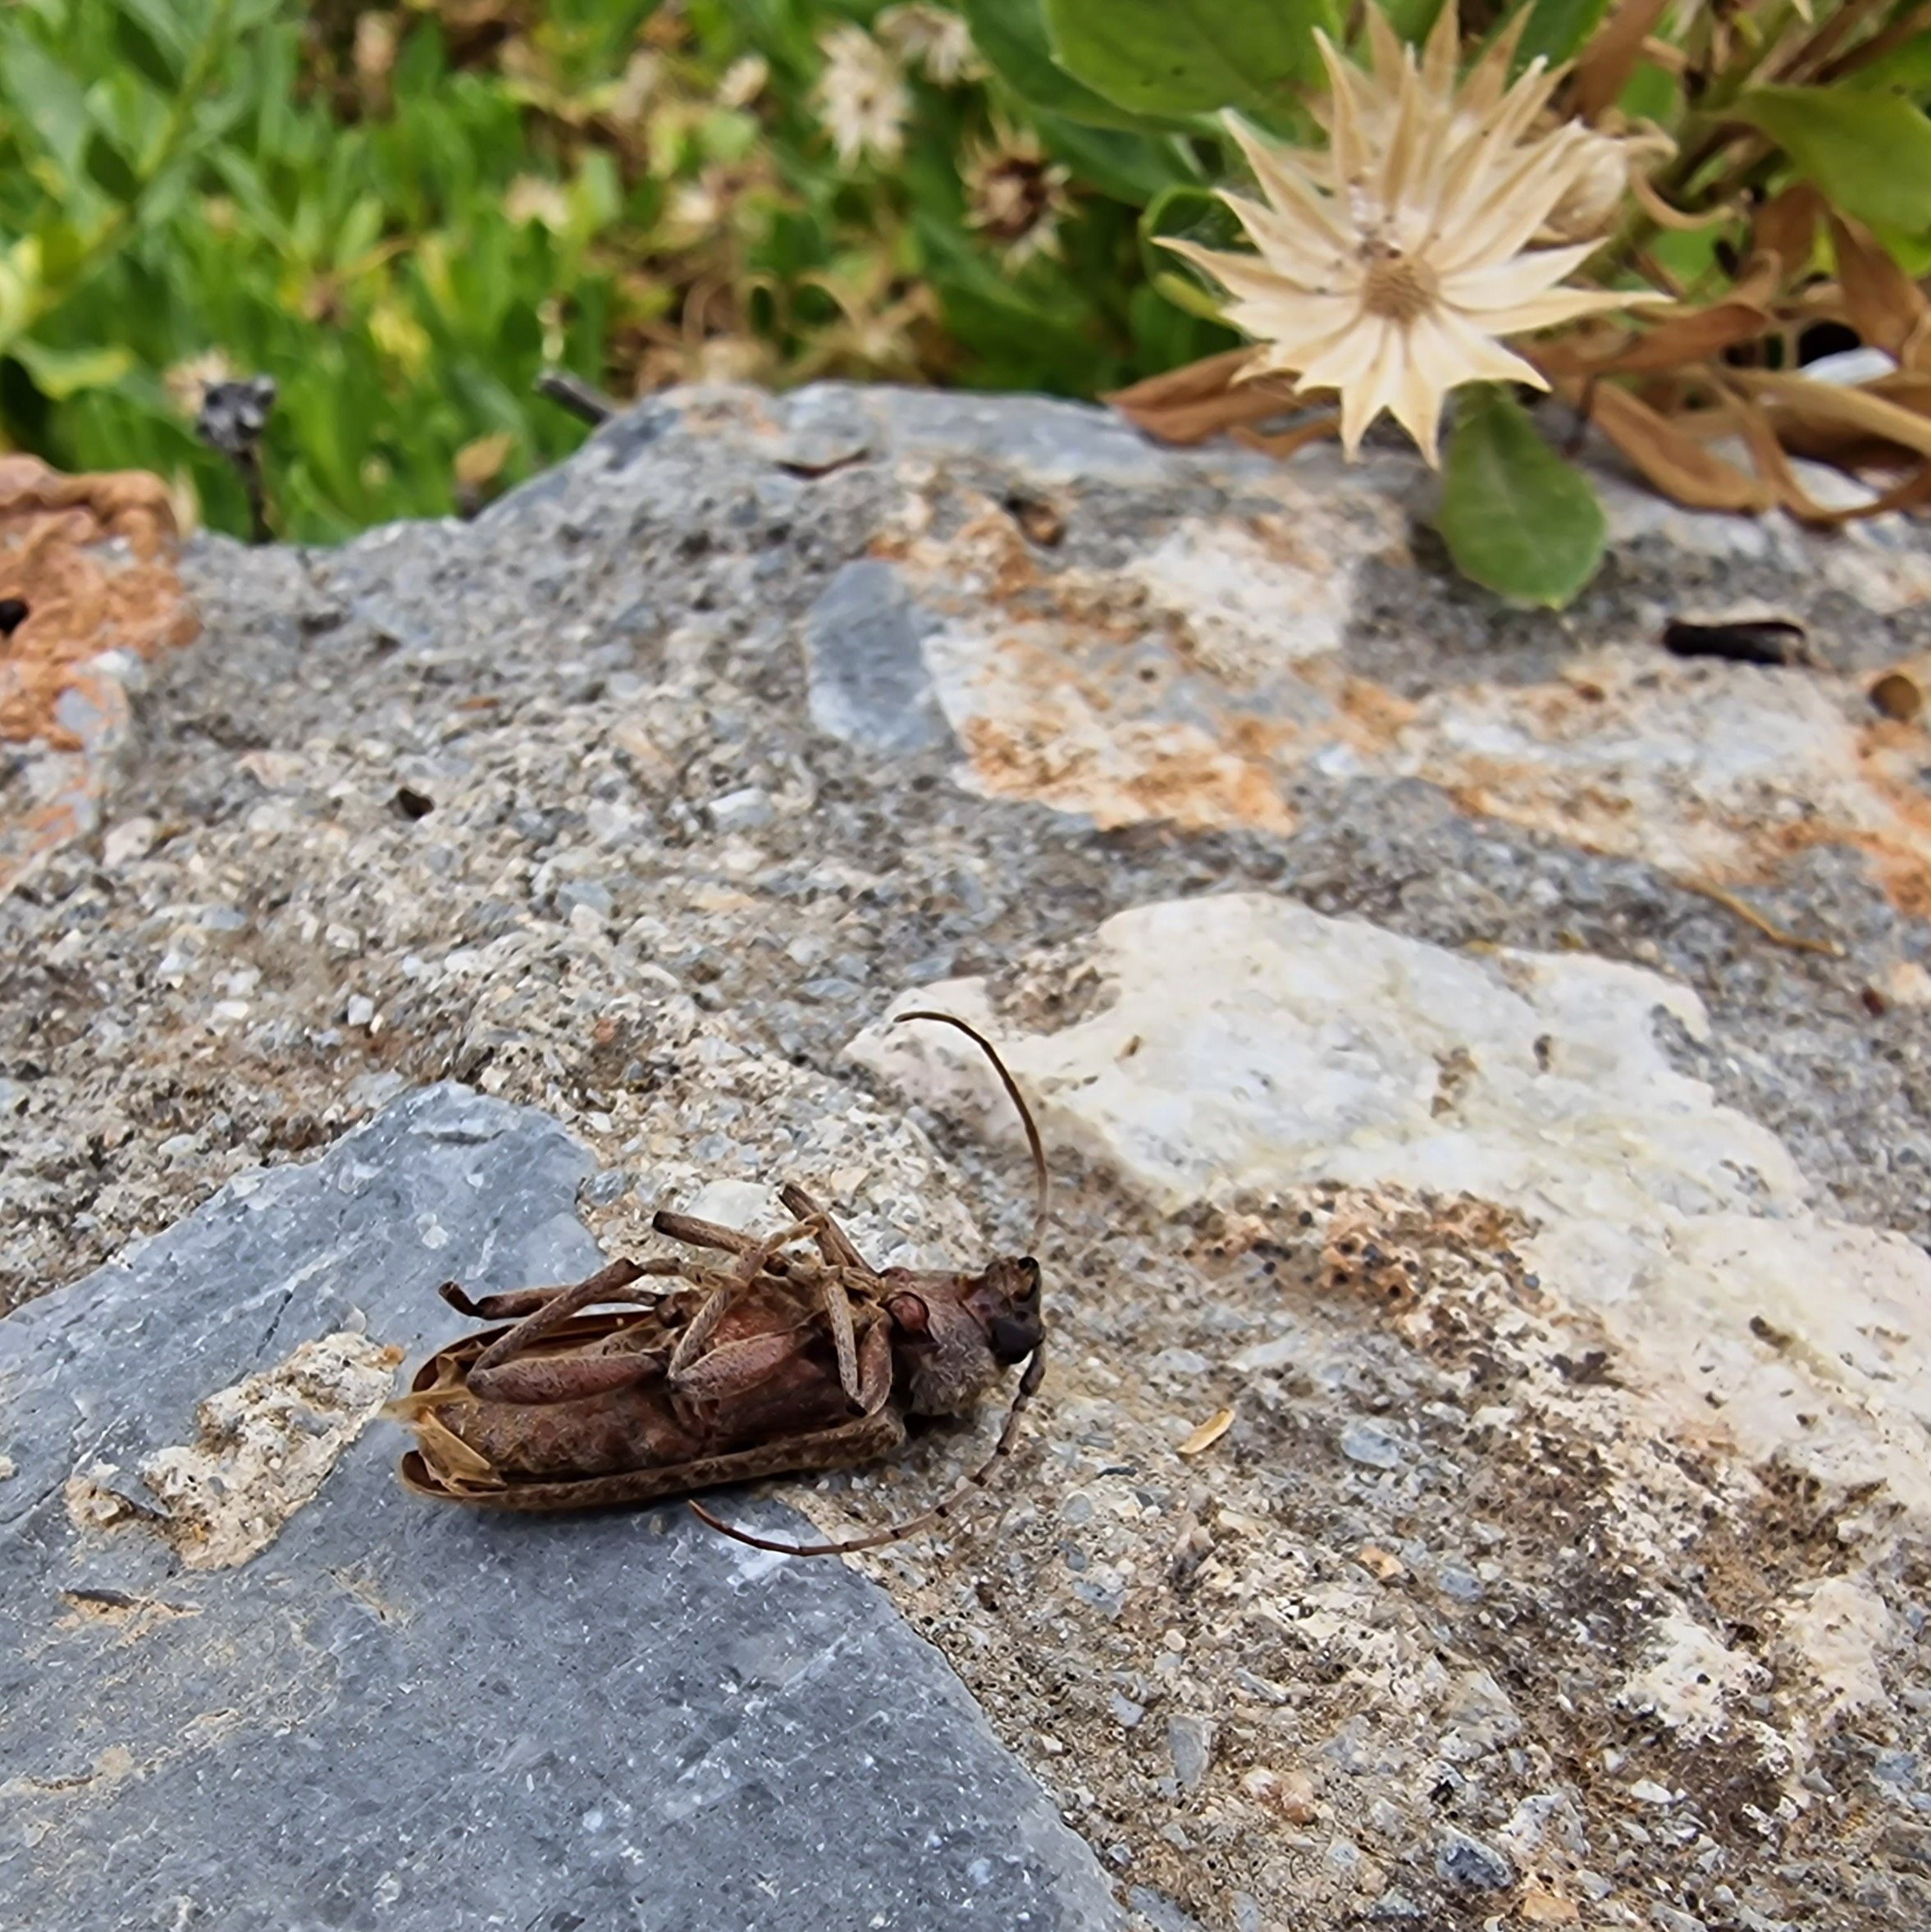 A cicada marbh